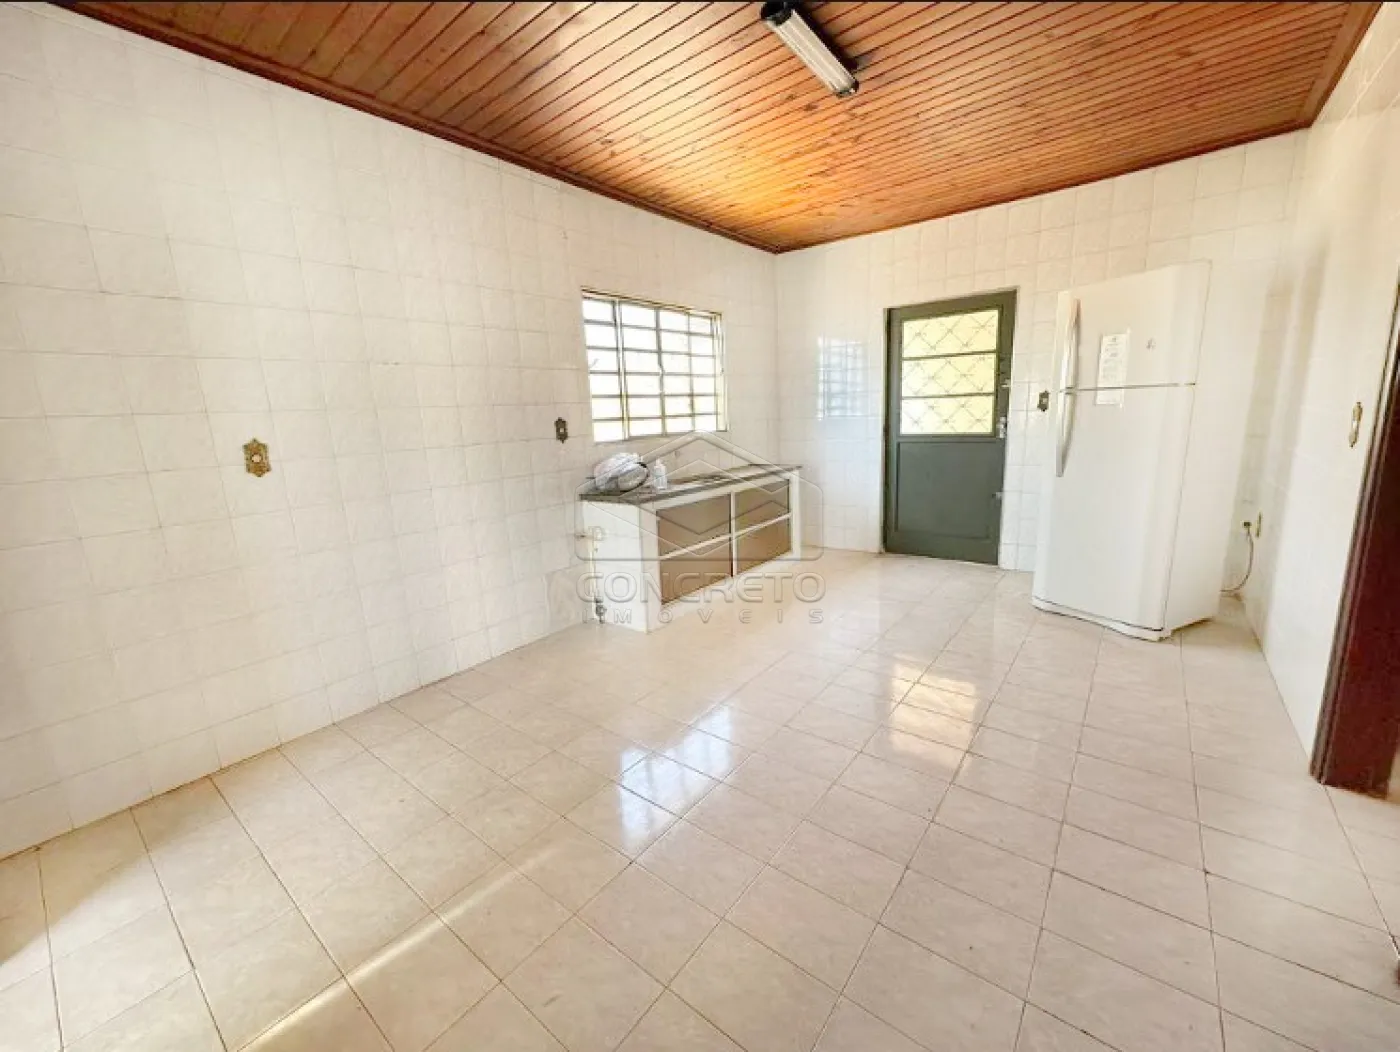 Comprar Casa / Padrão em Lençóis Paulista R$ 260.000,00 - Foto 7